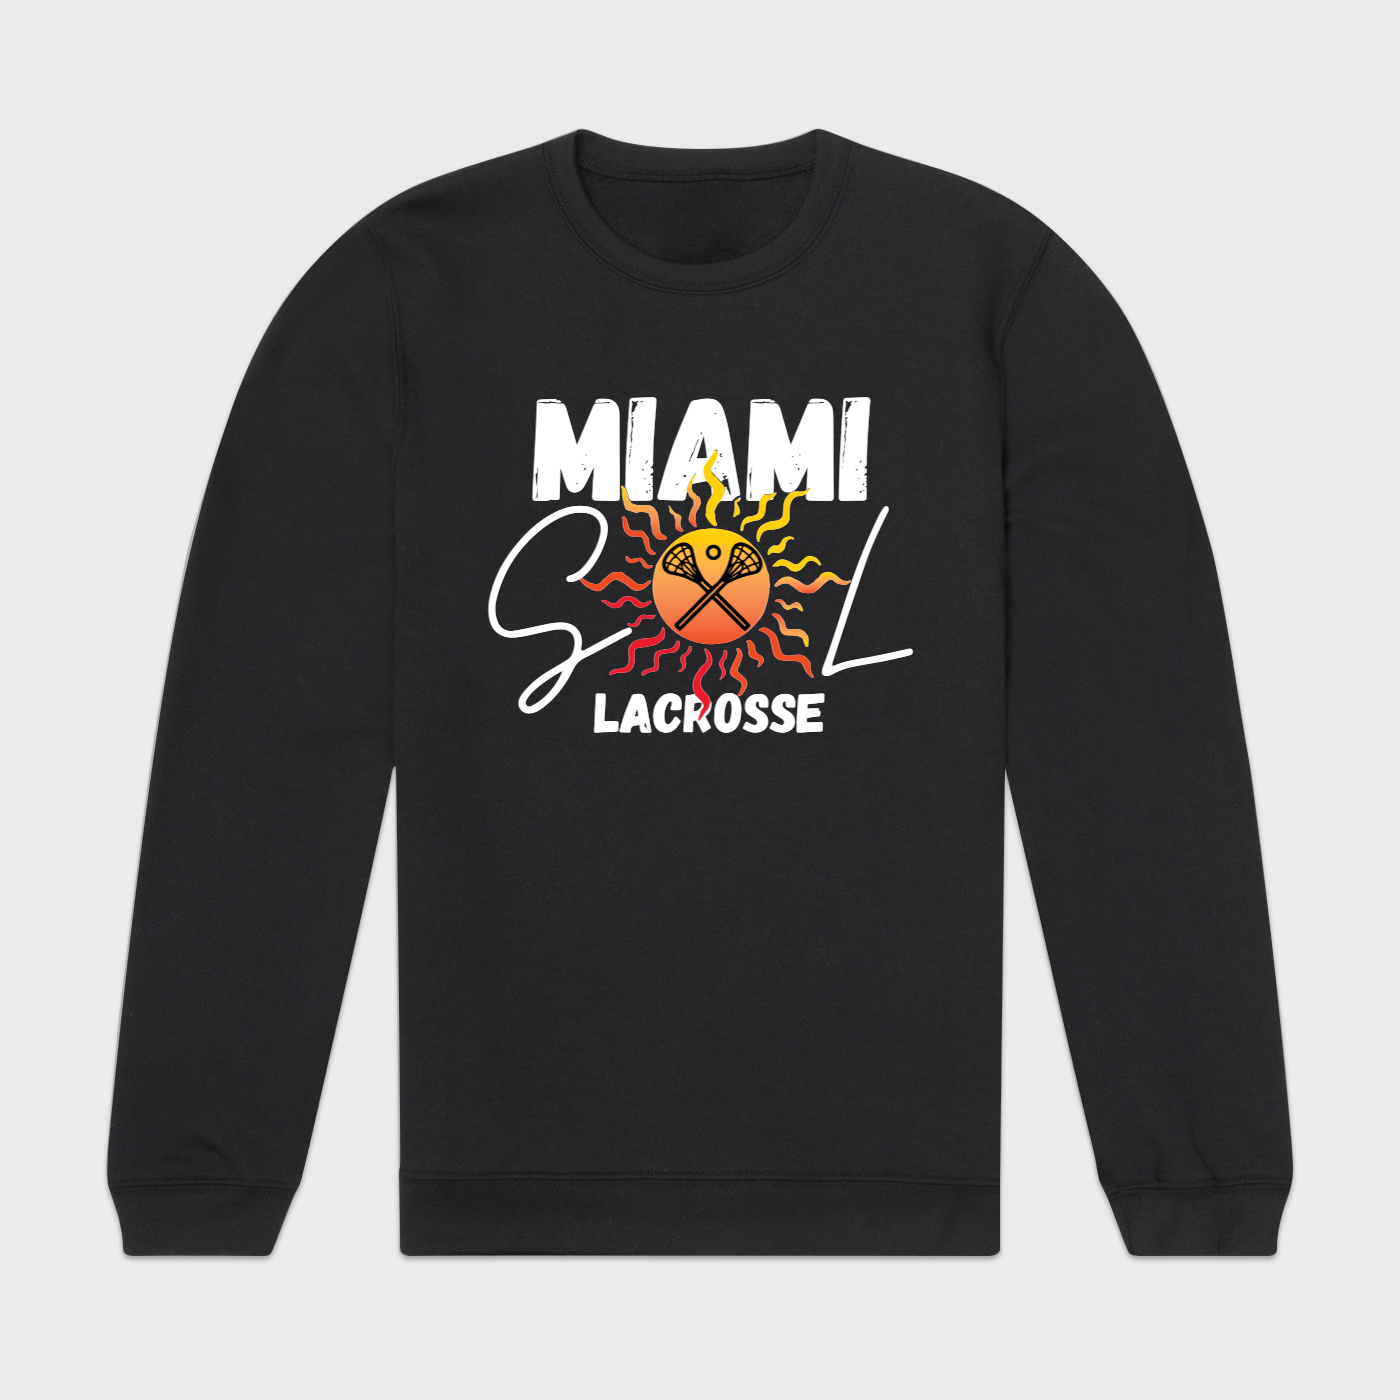 Miami SOL Lacrosse Unisex Crewneck Sweatshirt Signature Lacrosse